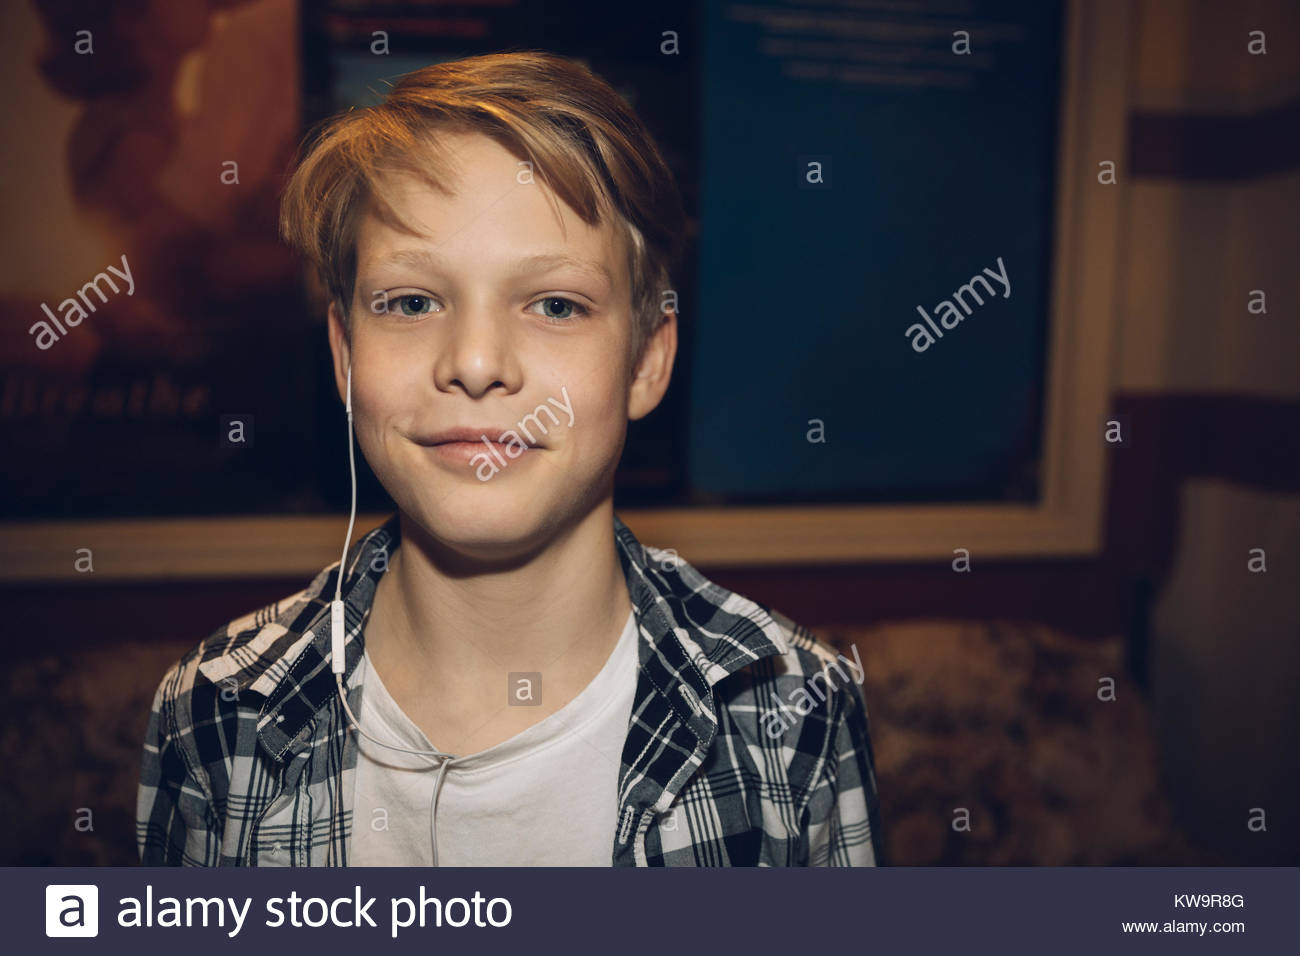 Boy with Platinum Blonde Hair - wide 4